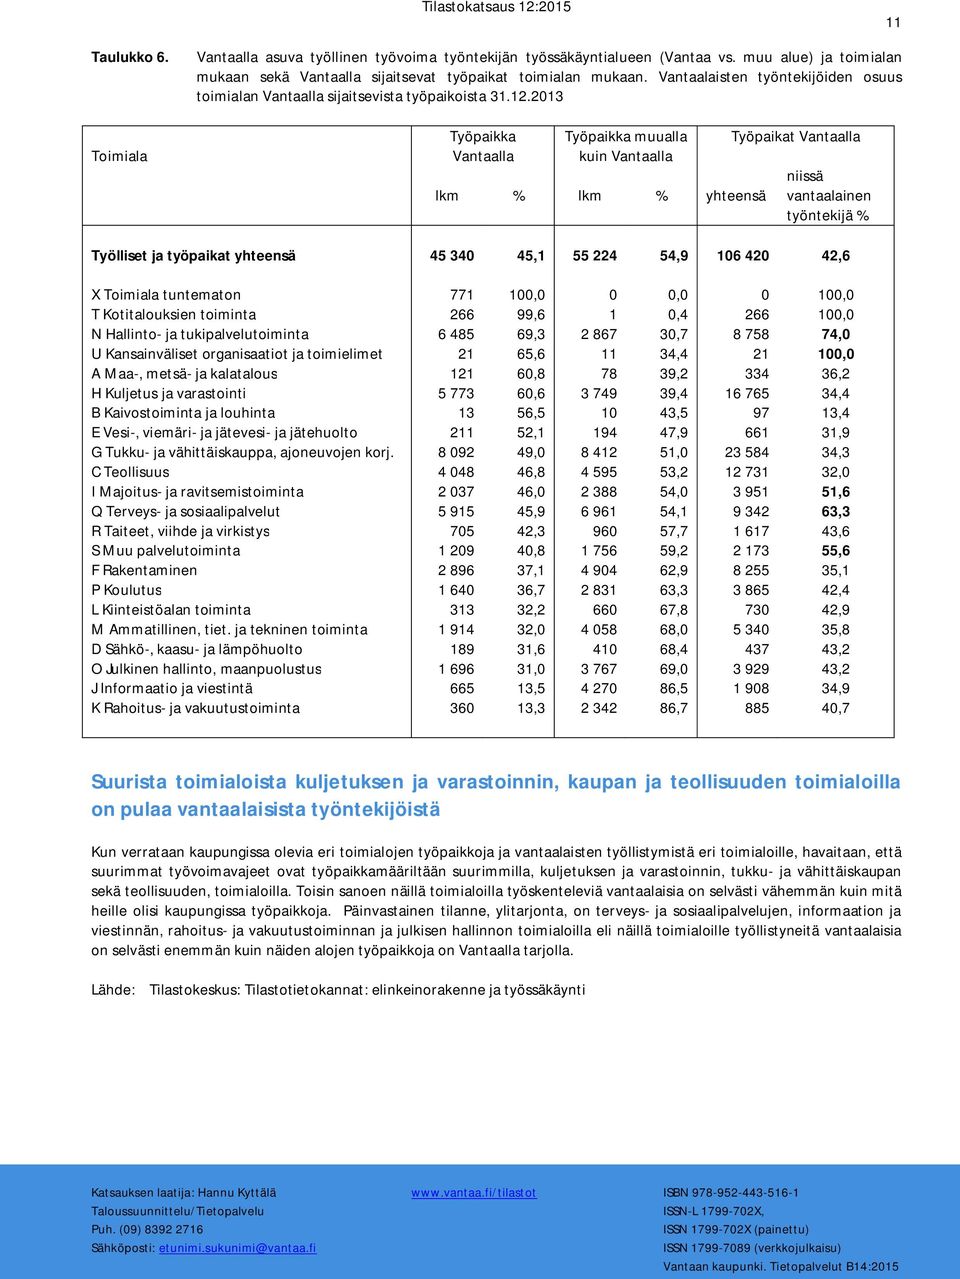 Työpaikka Vantaalla Työpaikka muualla kuin Vantaalla lkm % lkm % yhteensä Työpaikat Vantaalla niissä vantaalainen työntekijä % Työlliset ja työpaikat yhteensä 45 340 45,1 55 224 54,9 106 420 42,6 X